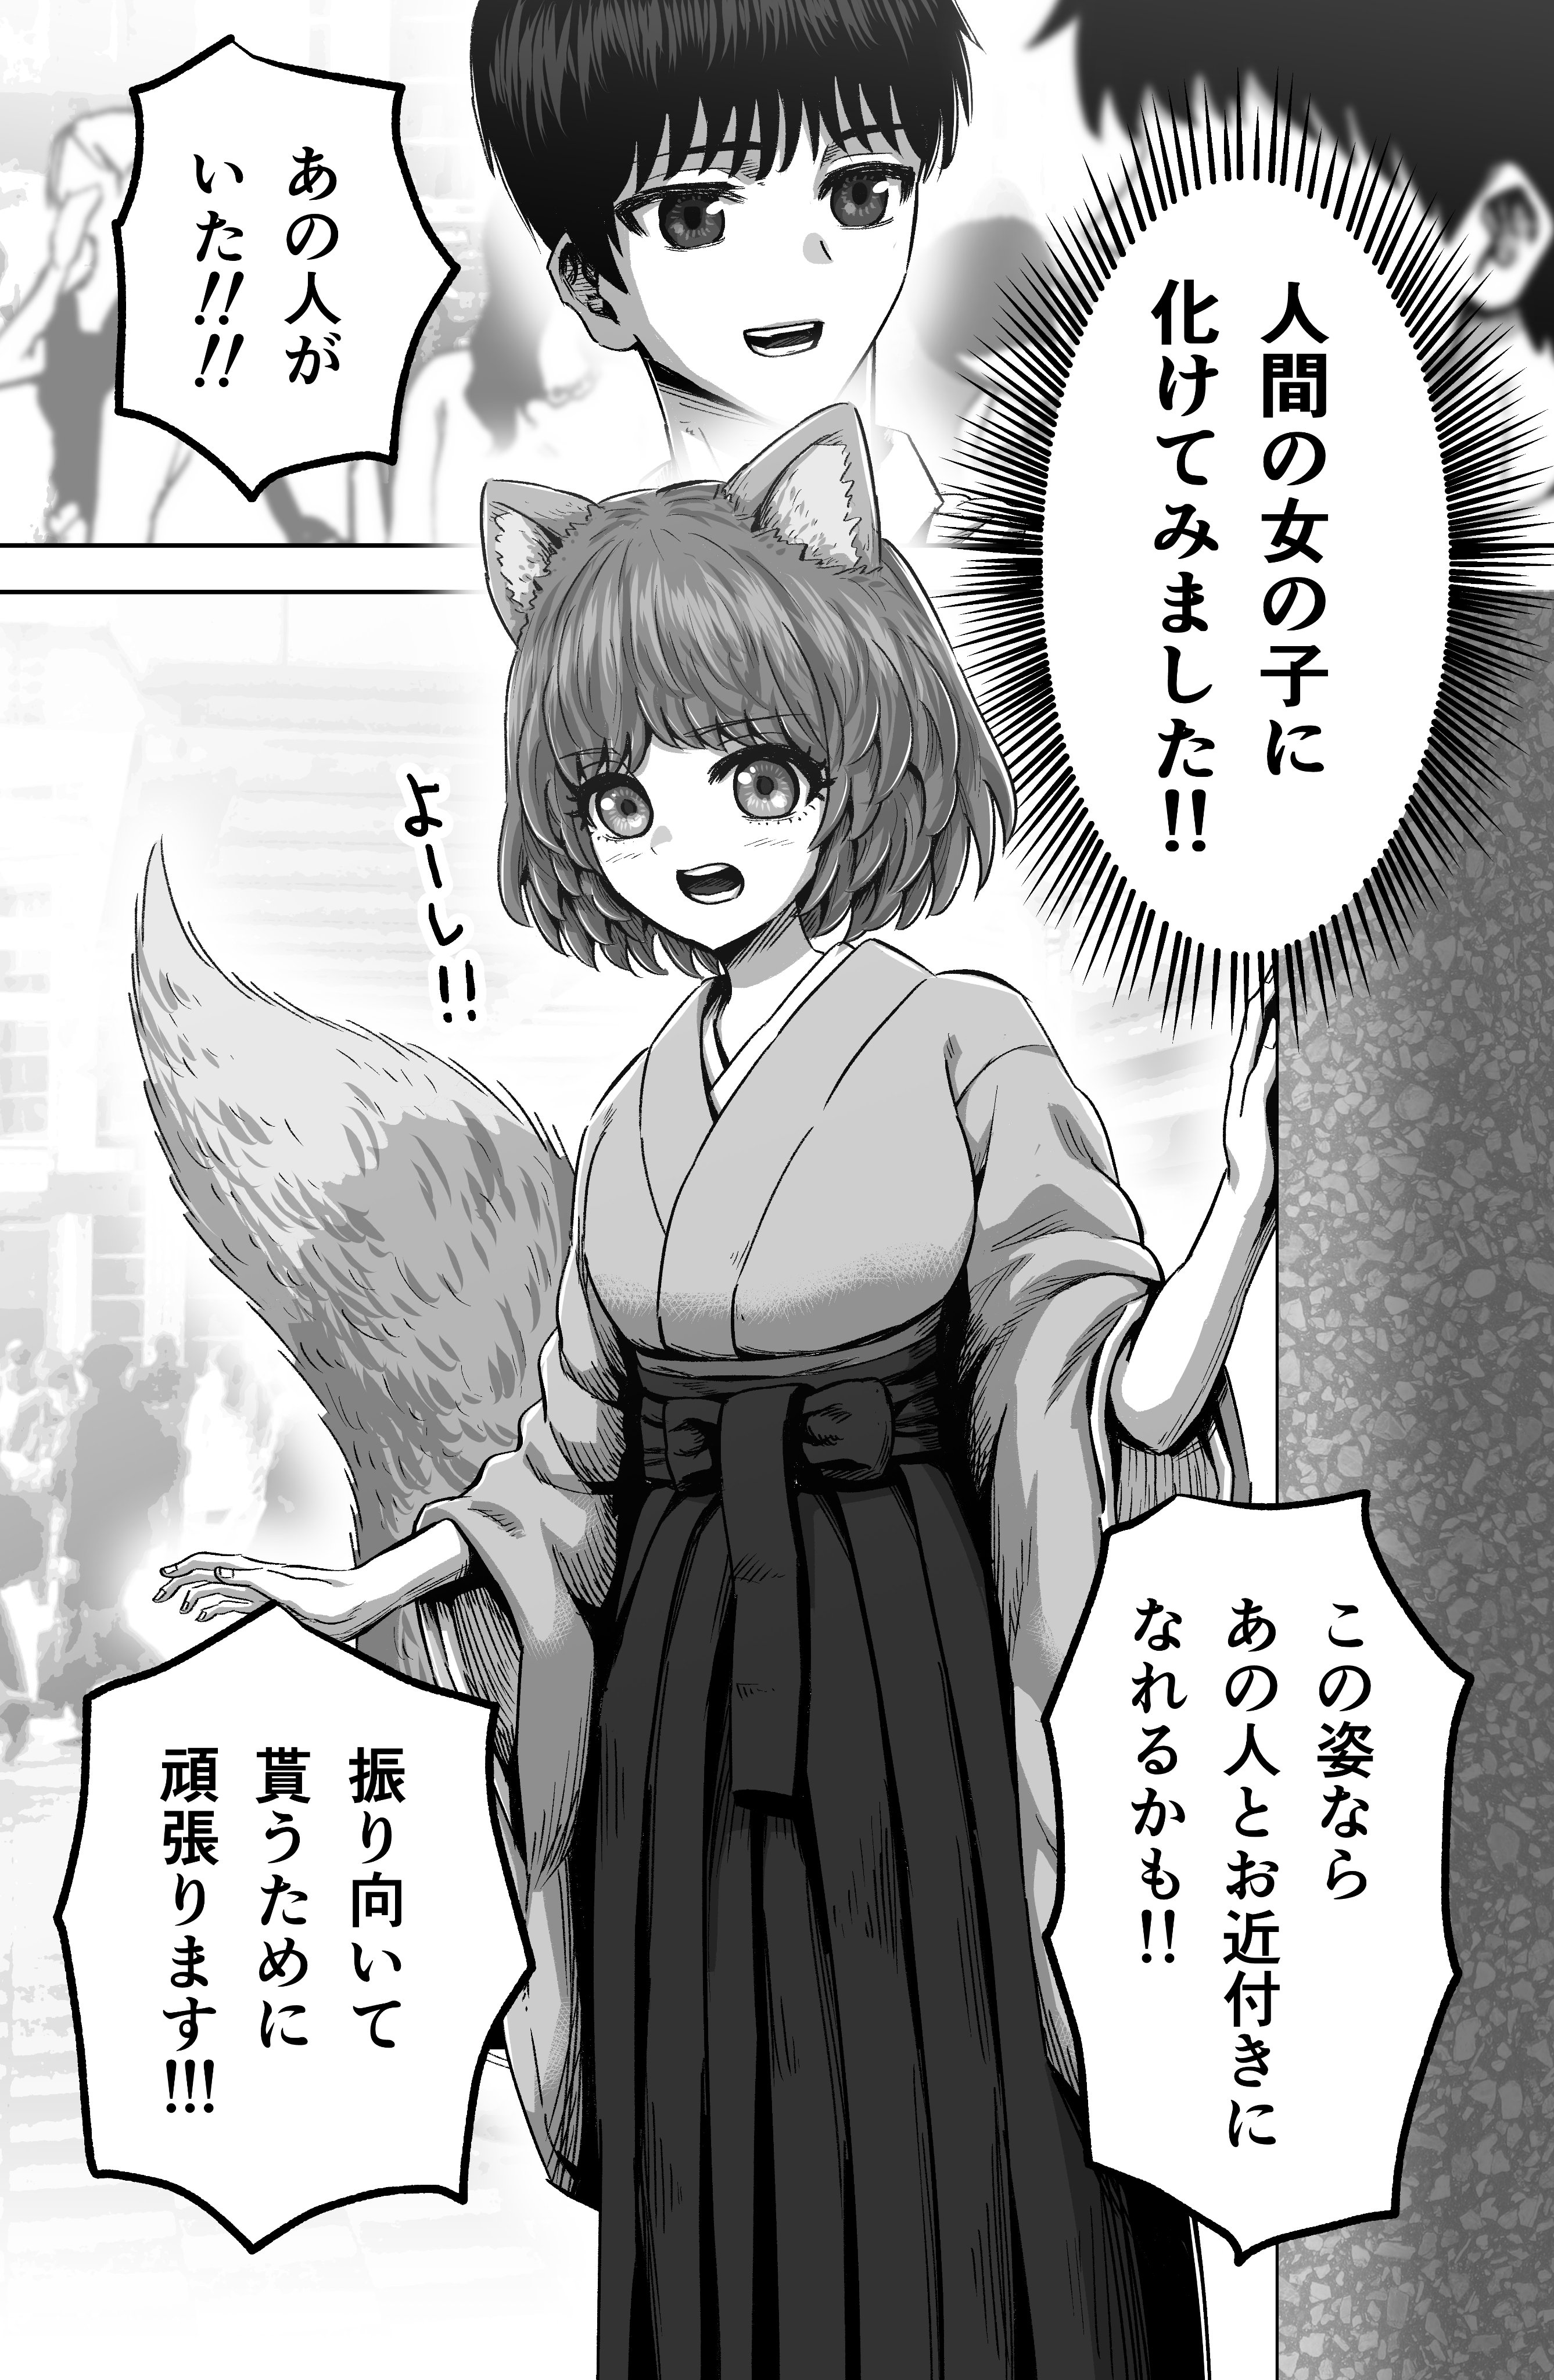 Foxgirl manga